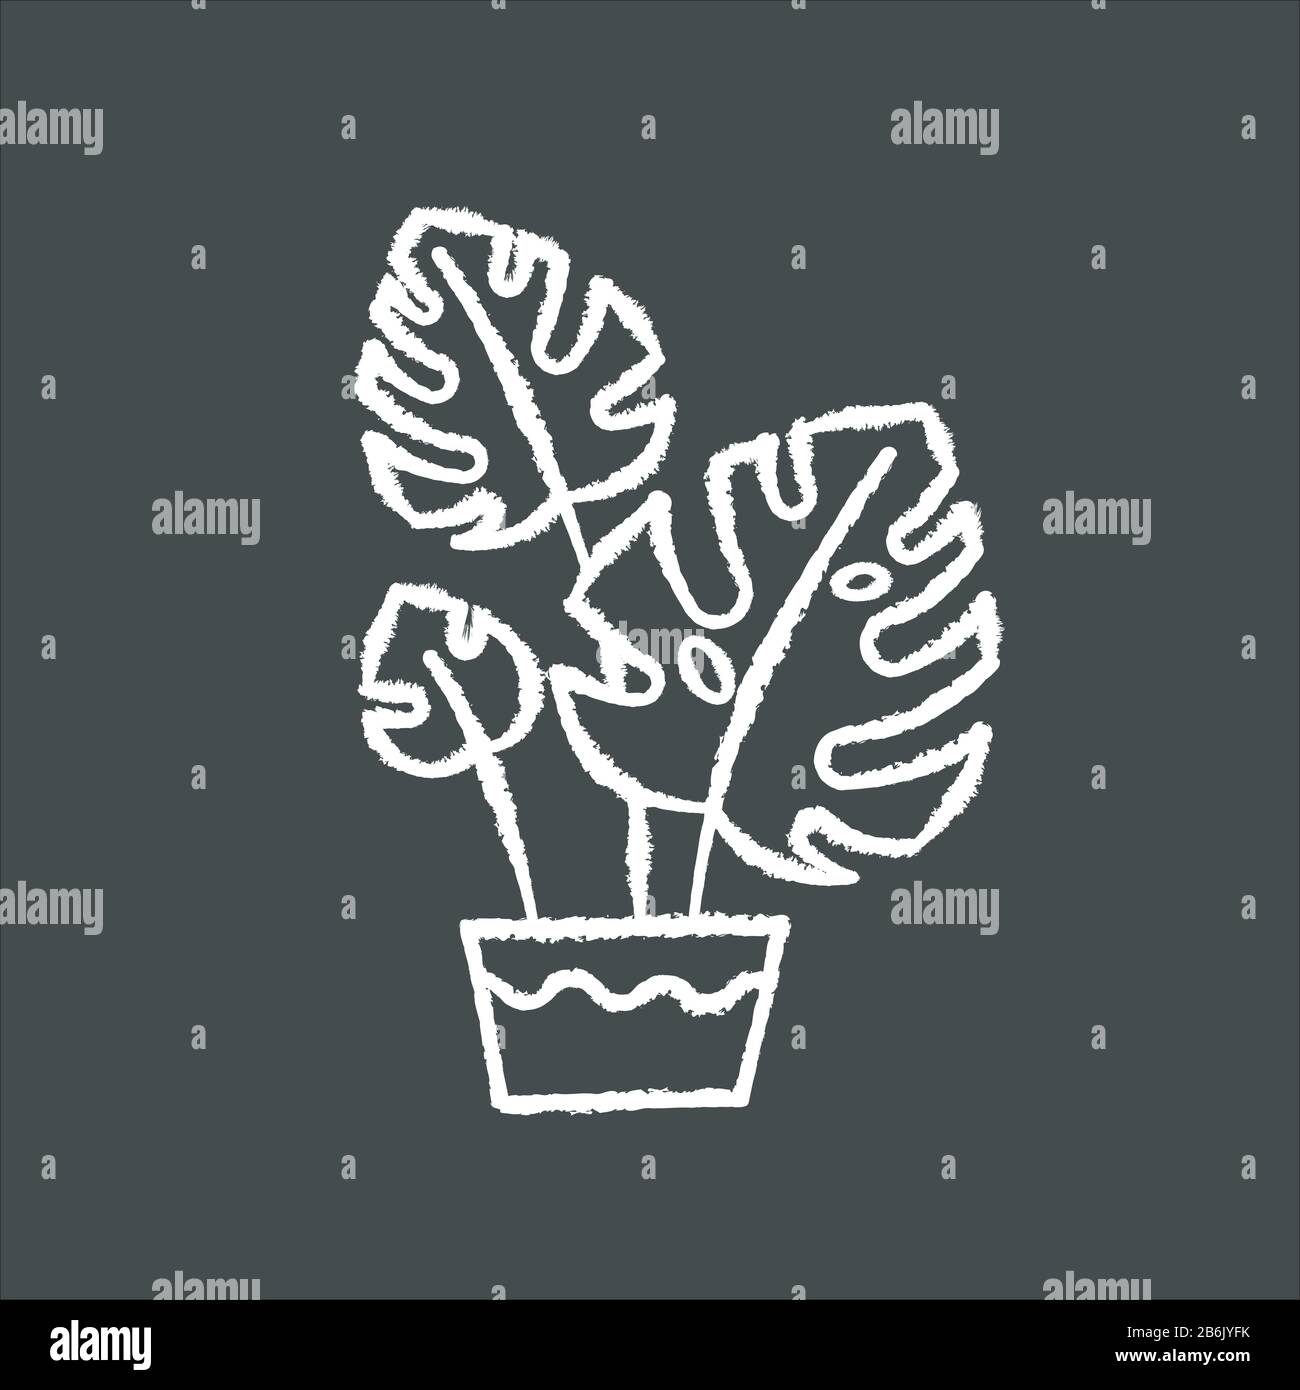 Monstera deliciosa gesso bianco icona su sfondo nero. Caseificio svizzero. Filodendro. Pianta tropicale interna con foglie separate. Decorativa frondosa Illustrazione Vettoriale